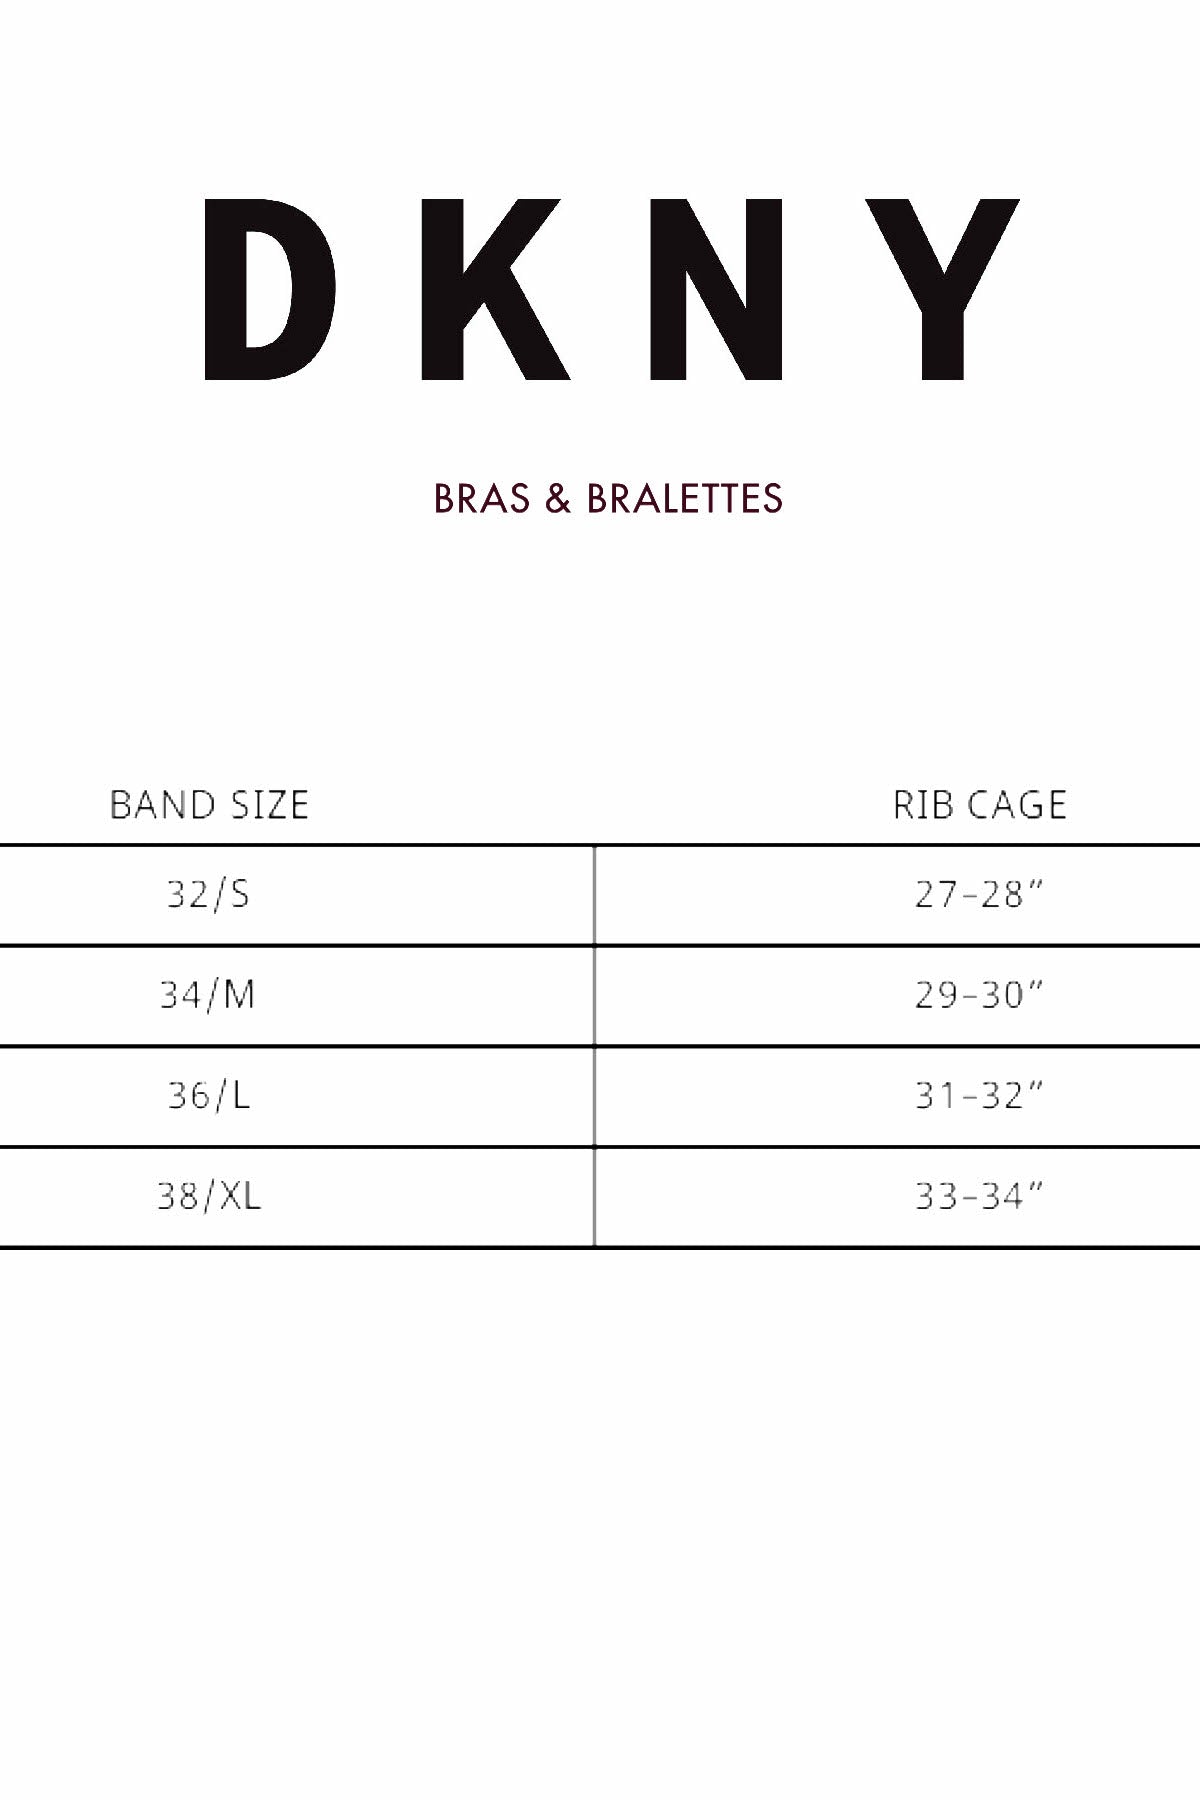 DKNY Bordeaux Nightfall Crochet/Lace Balconette Bra